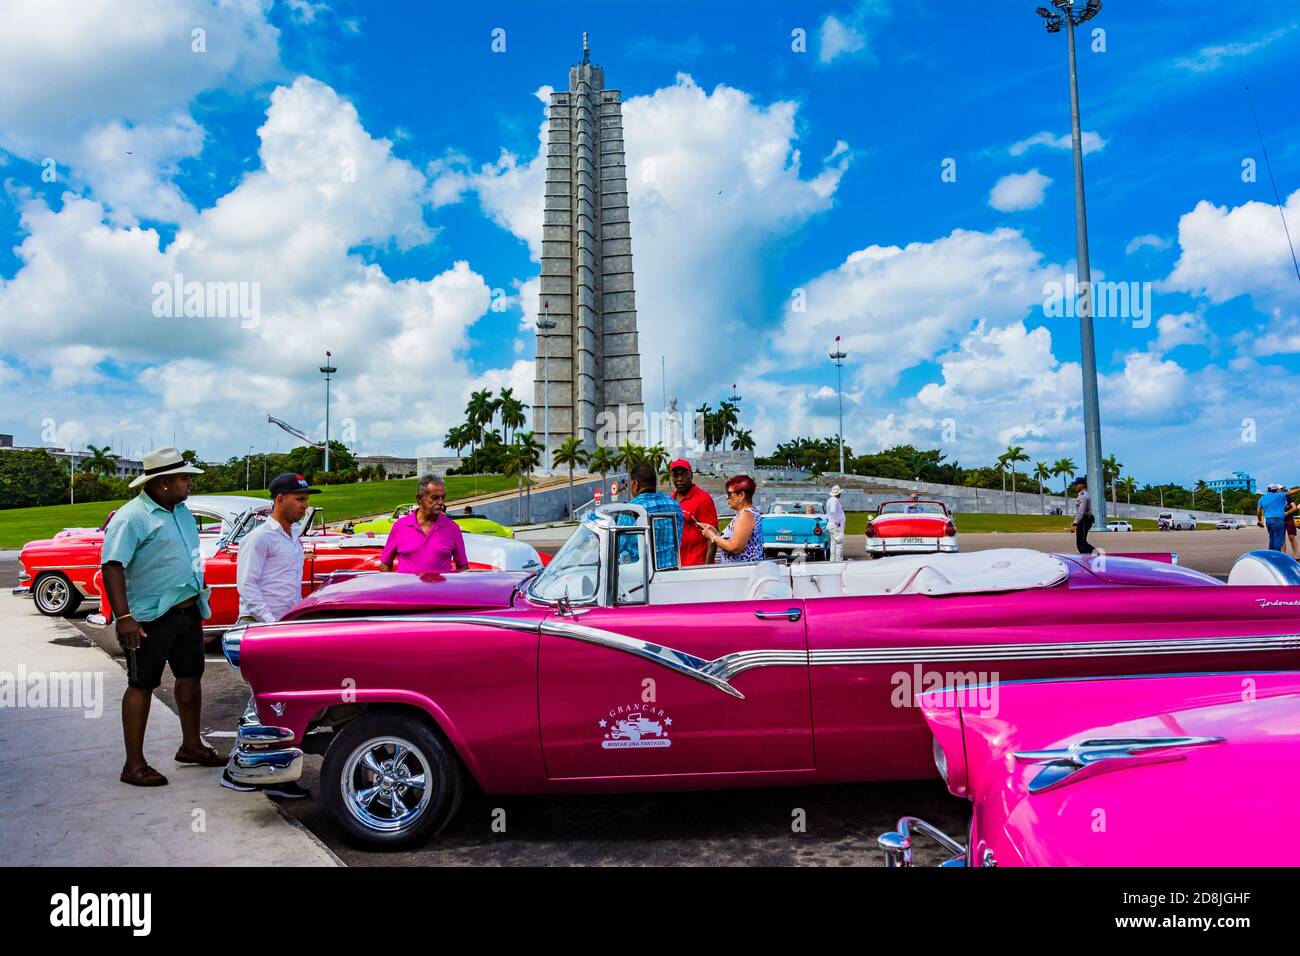 Les chauffeurs de taxi parlent sur la place de la Révolution - Plaza de la revolución, avec le Monument pour honorer José Martí en arrière-plan. La Habana - la Havane, C Banque D'Images